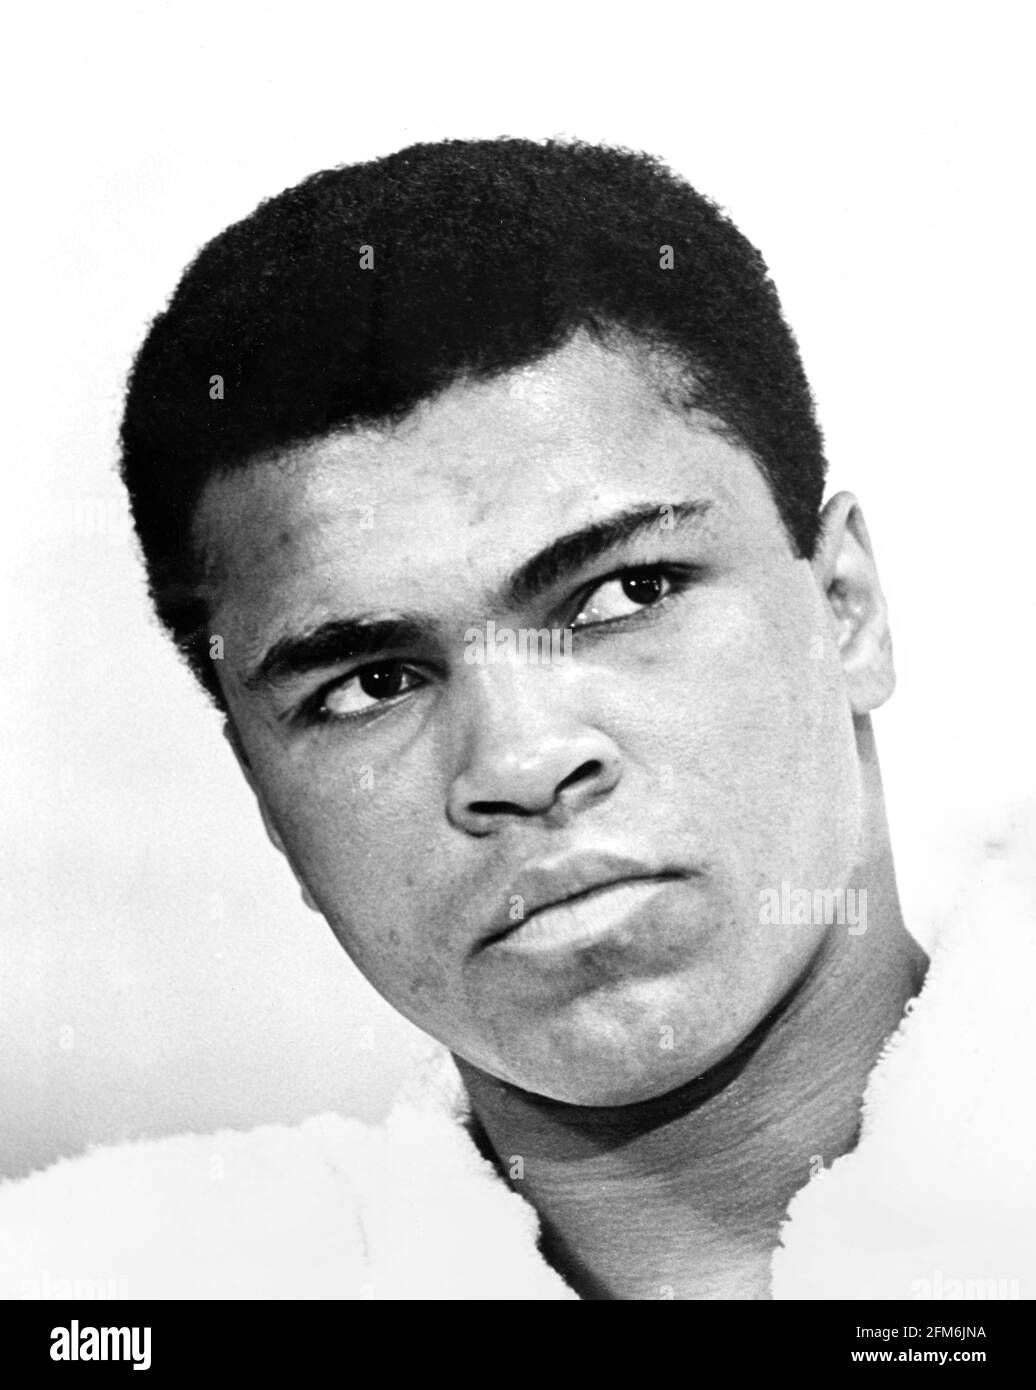 Muhammad Ali. Ritratto del pugile pesi massimi Muhammad Ali ( b. Cassius Marcellus Clay Jr., 1942-2016) nel 1967. Foto di ira Rosenberg Foto Stock